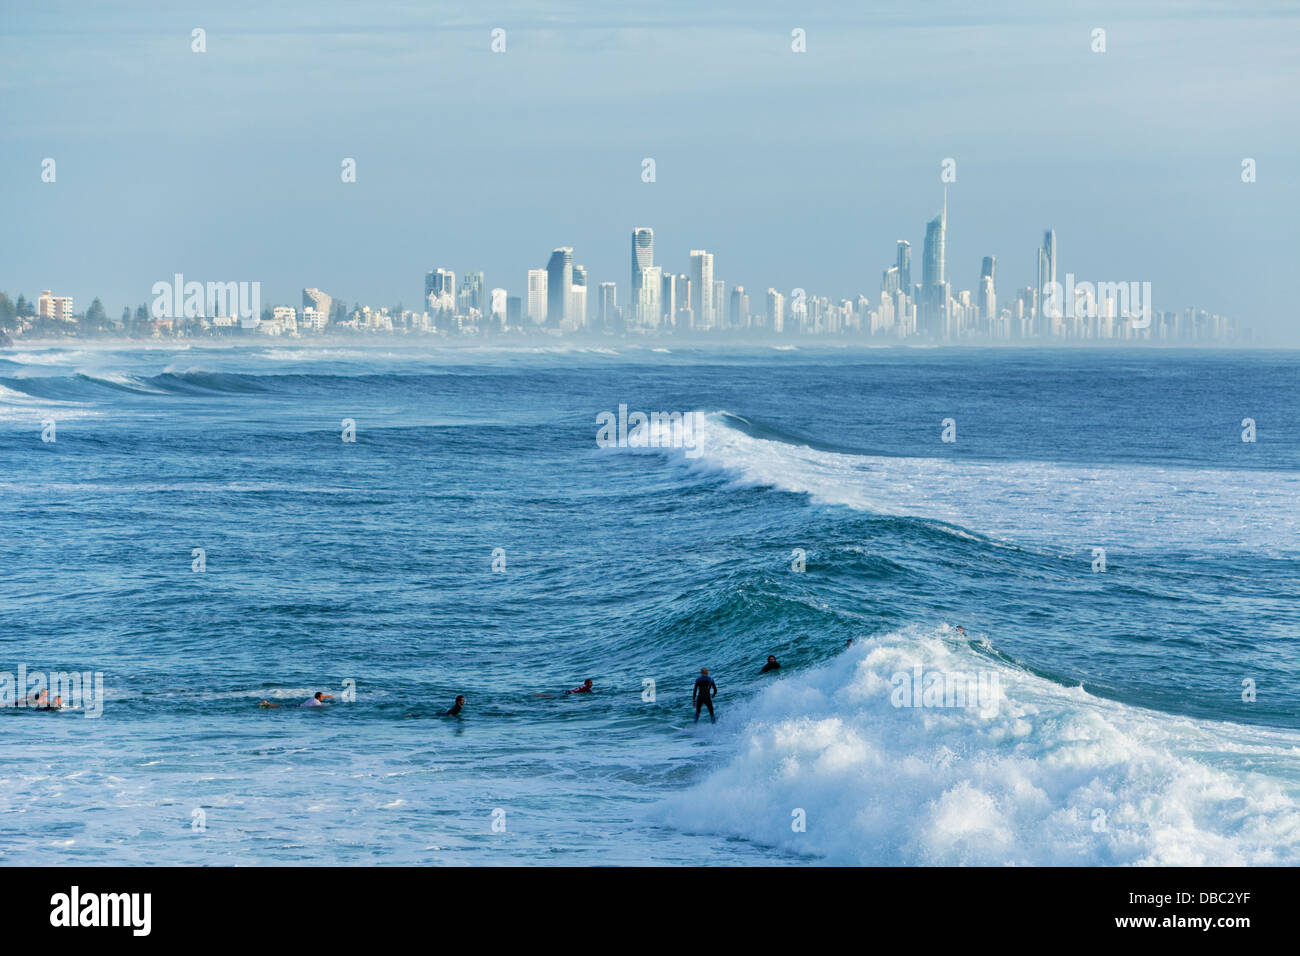 Surfer reiten Welle mit Surfers Paradise Skyline im Hintergrund. Burleigh Heads, Gold Coast, Queensland, Australien Stockfoto